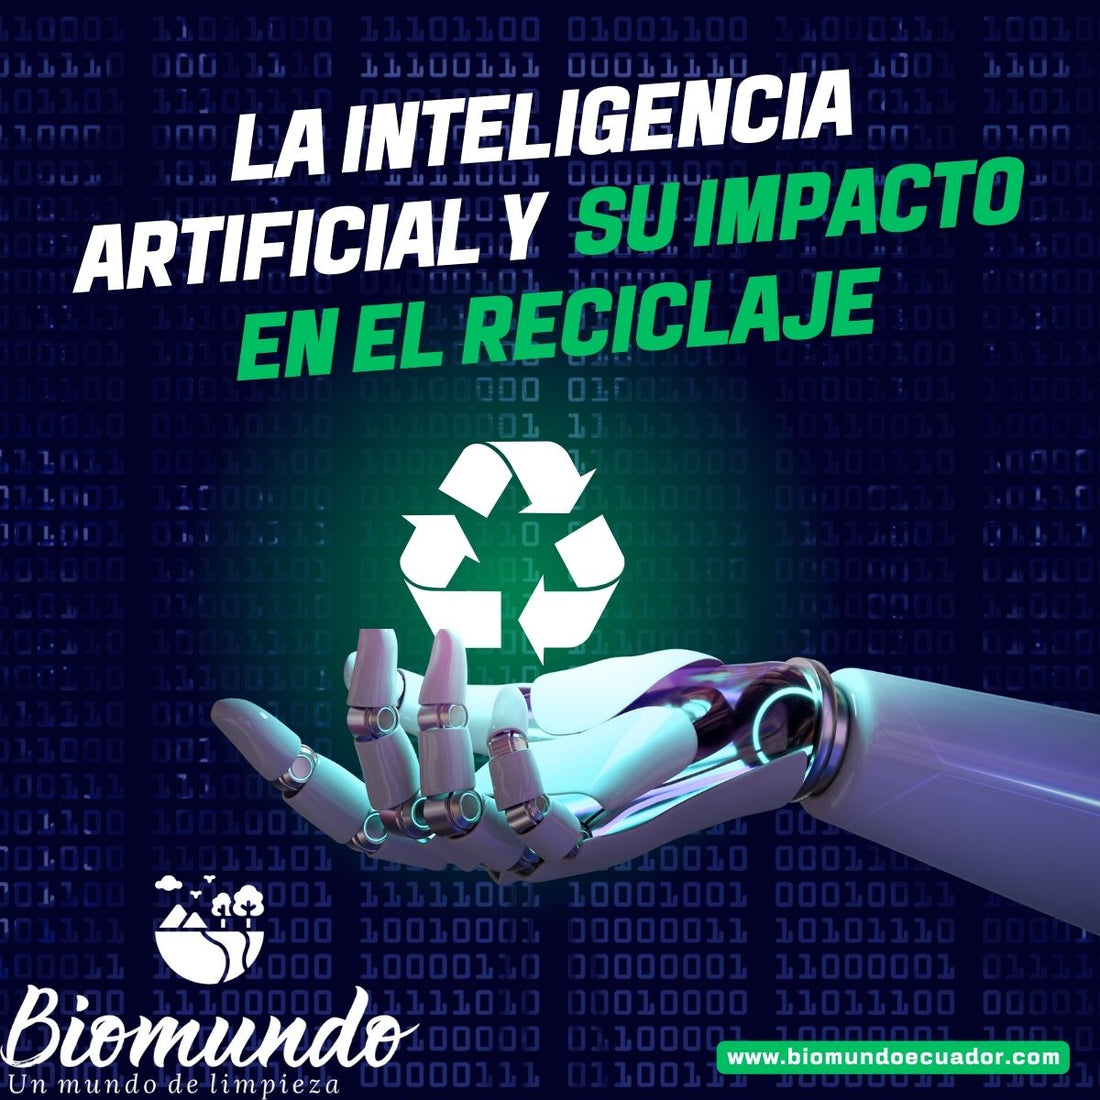 La Inteligencia Artificial y su impacto en el Reciclaje